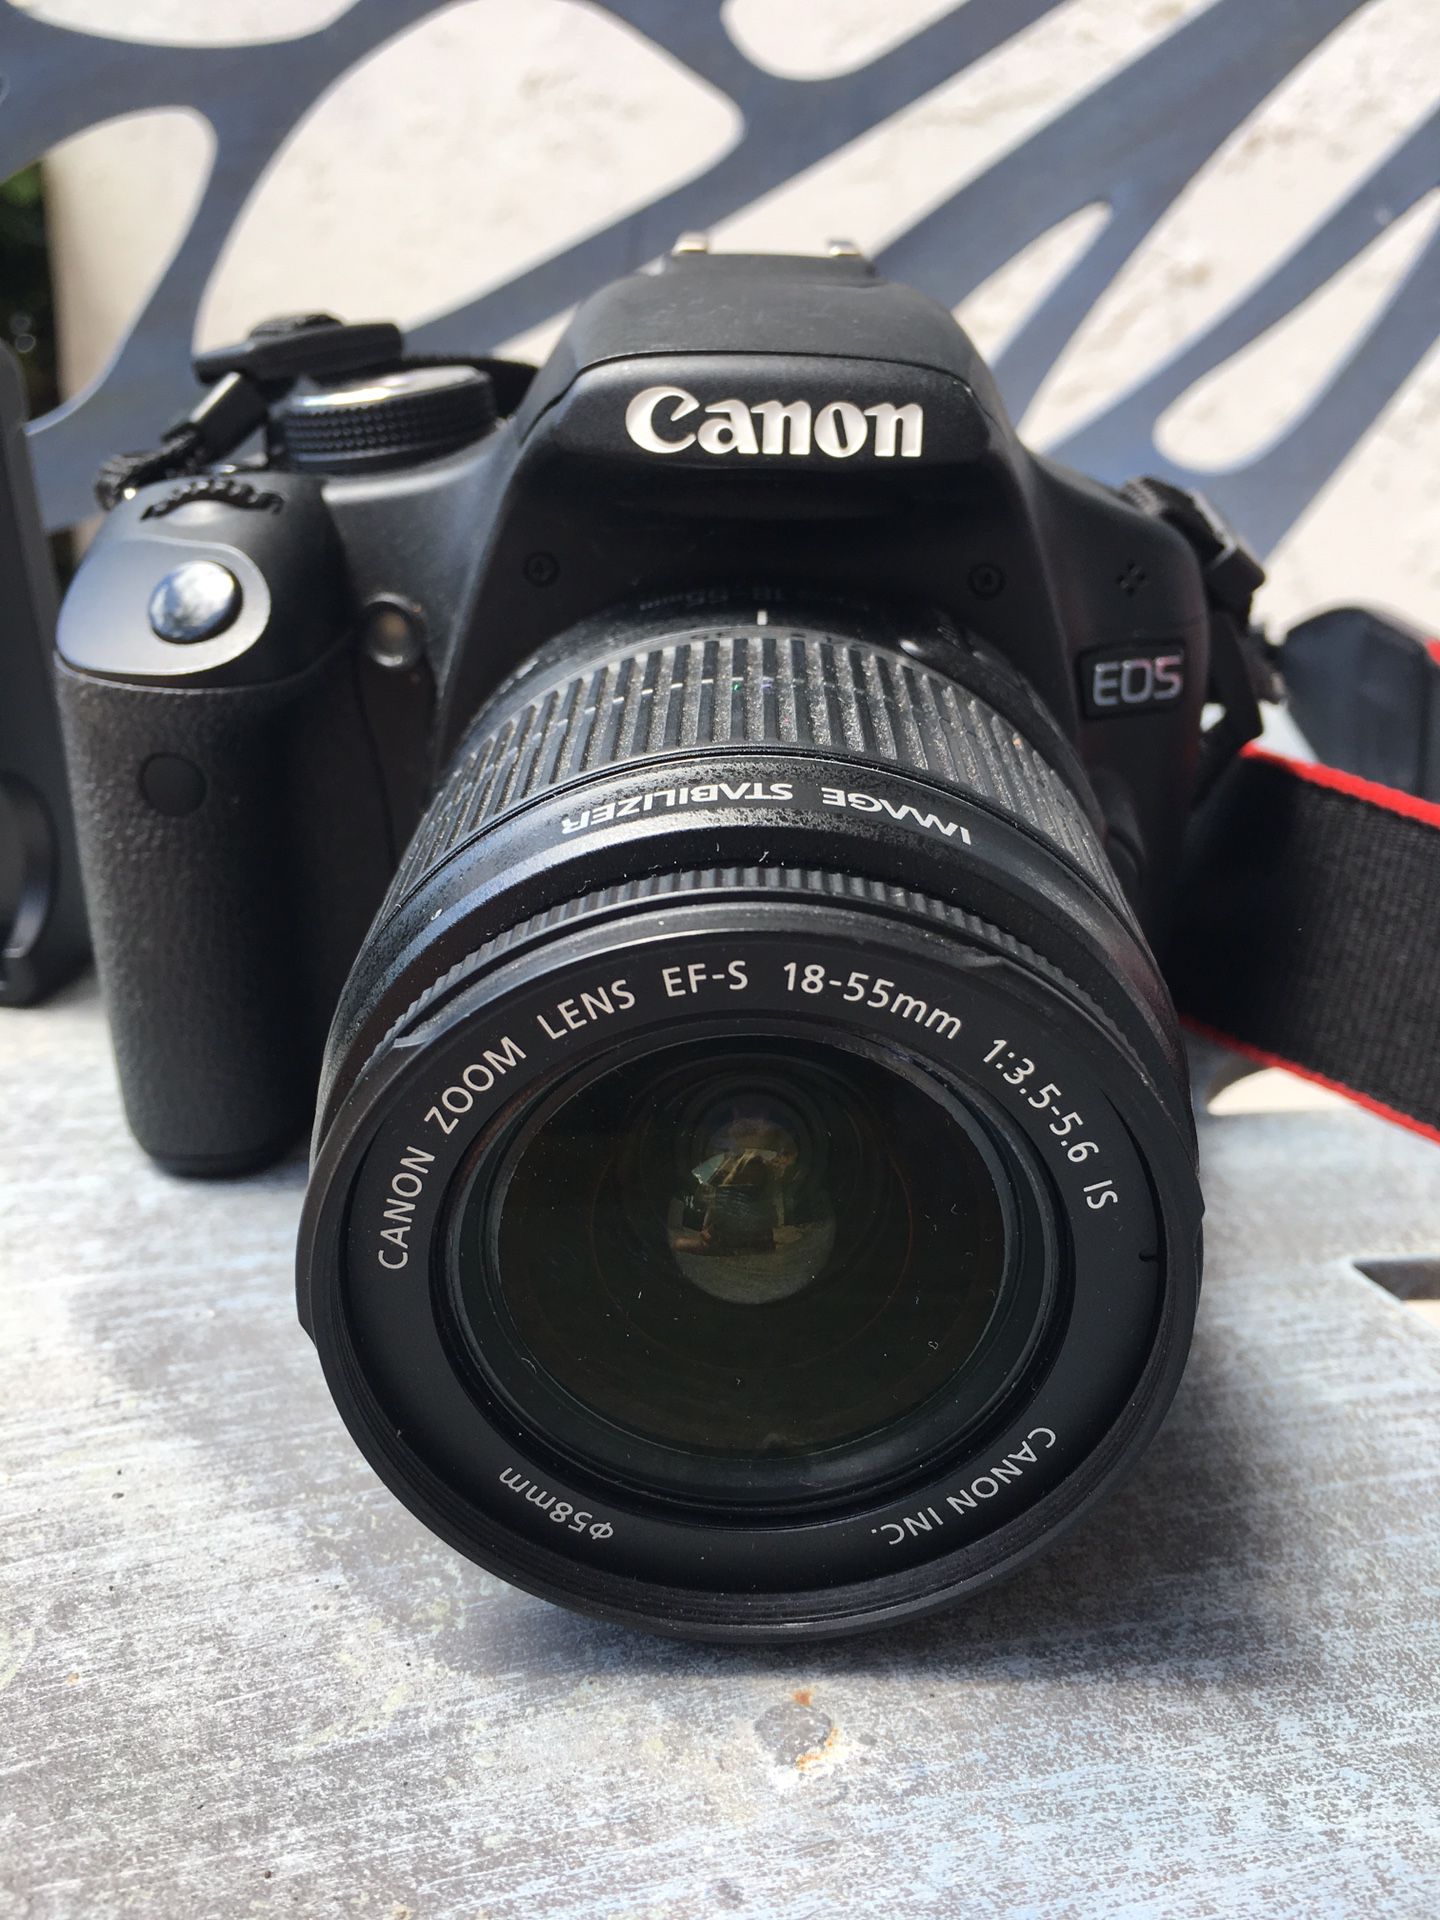 Canon EFS TI1 Rebel camera